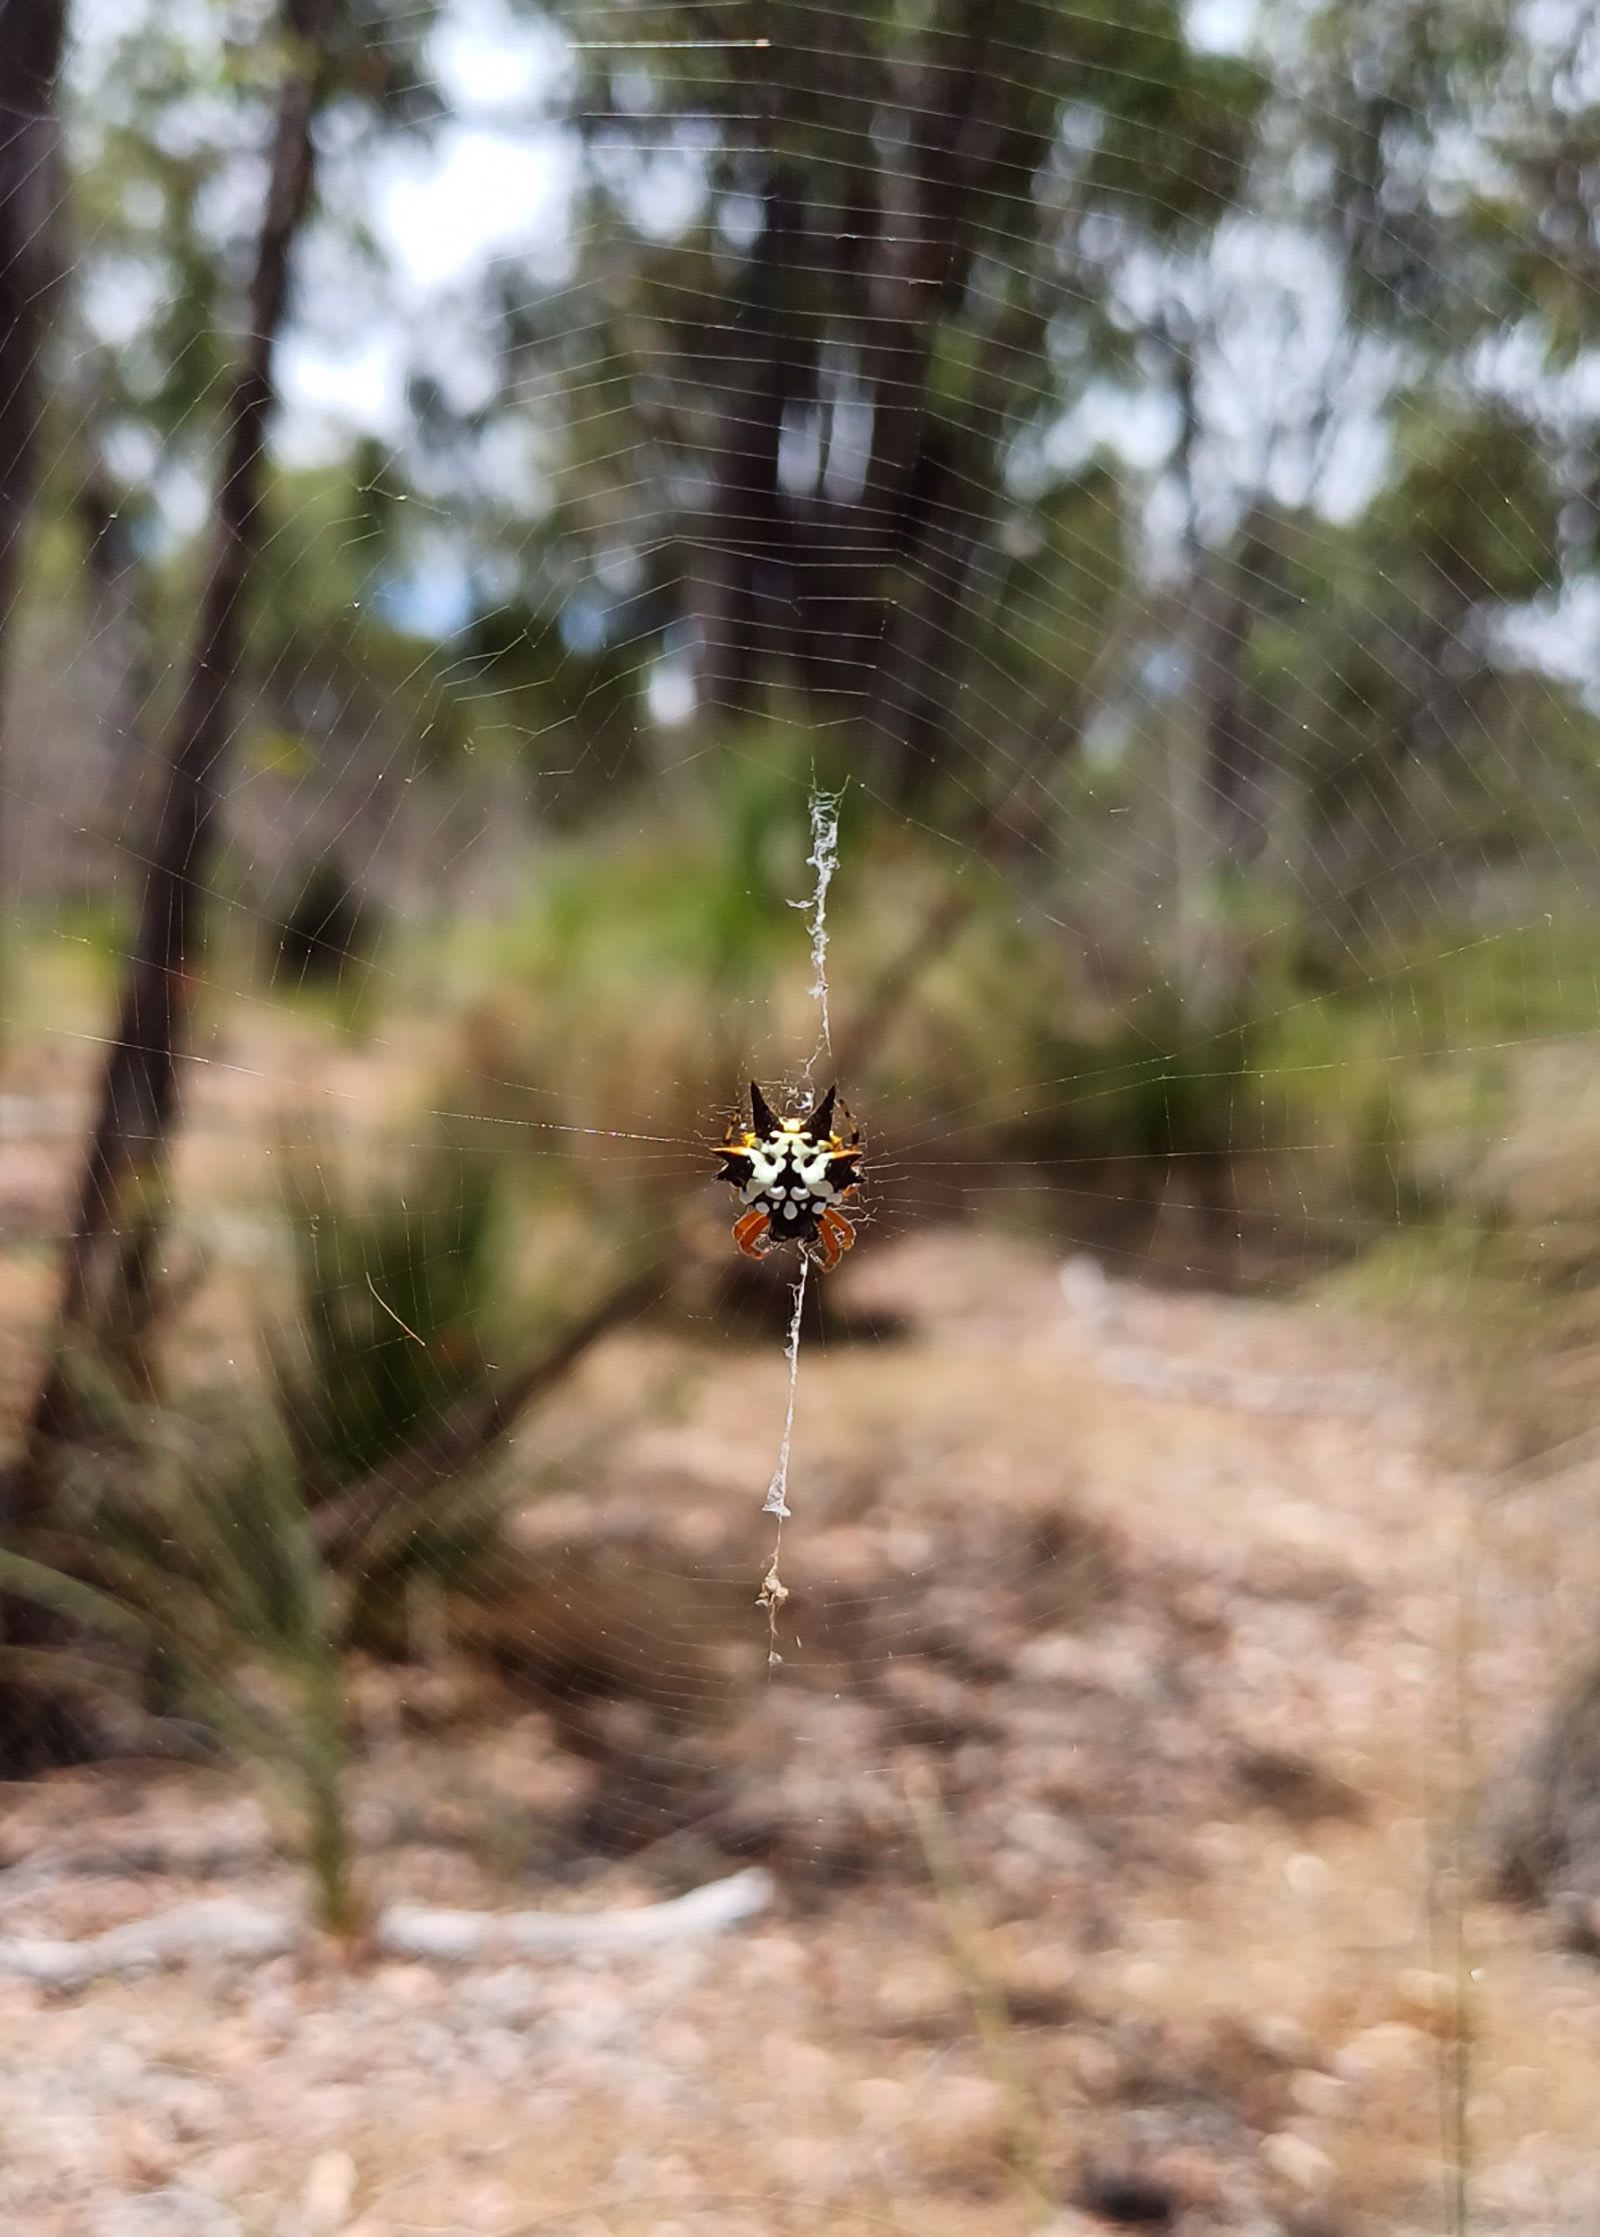 شباك العنكبوت بمثابة "خزانات للمعلومات الجينية" بحسب دراسة جديدة في أستراليا